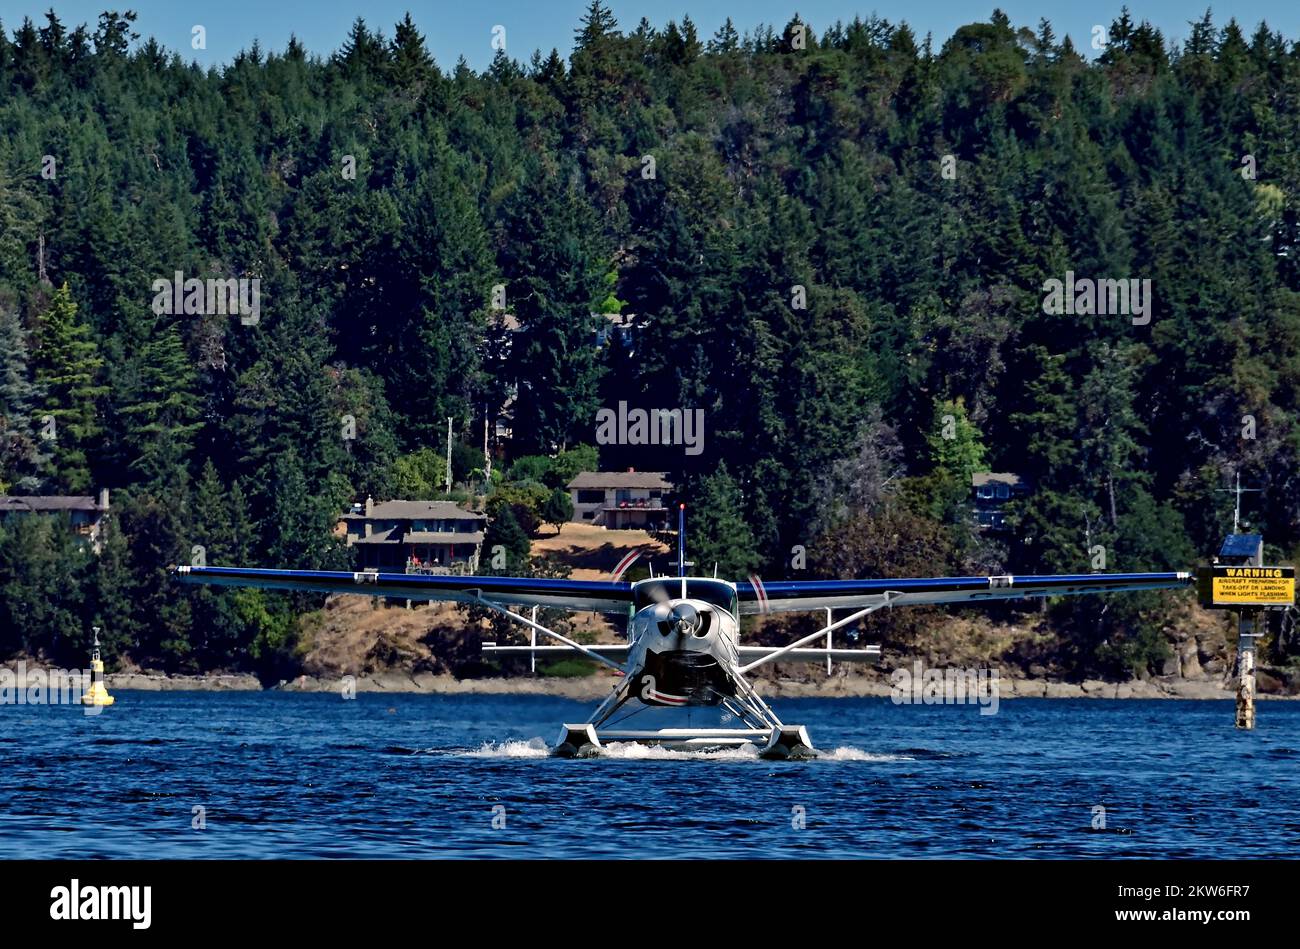 Una vista frontale di un aereo galleggiante che decolora sull'acqua sulla costa dell'Isola di Vancouver nella British Columbia Canada. Foto Stock